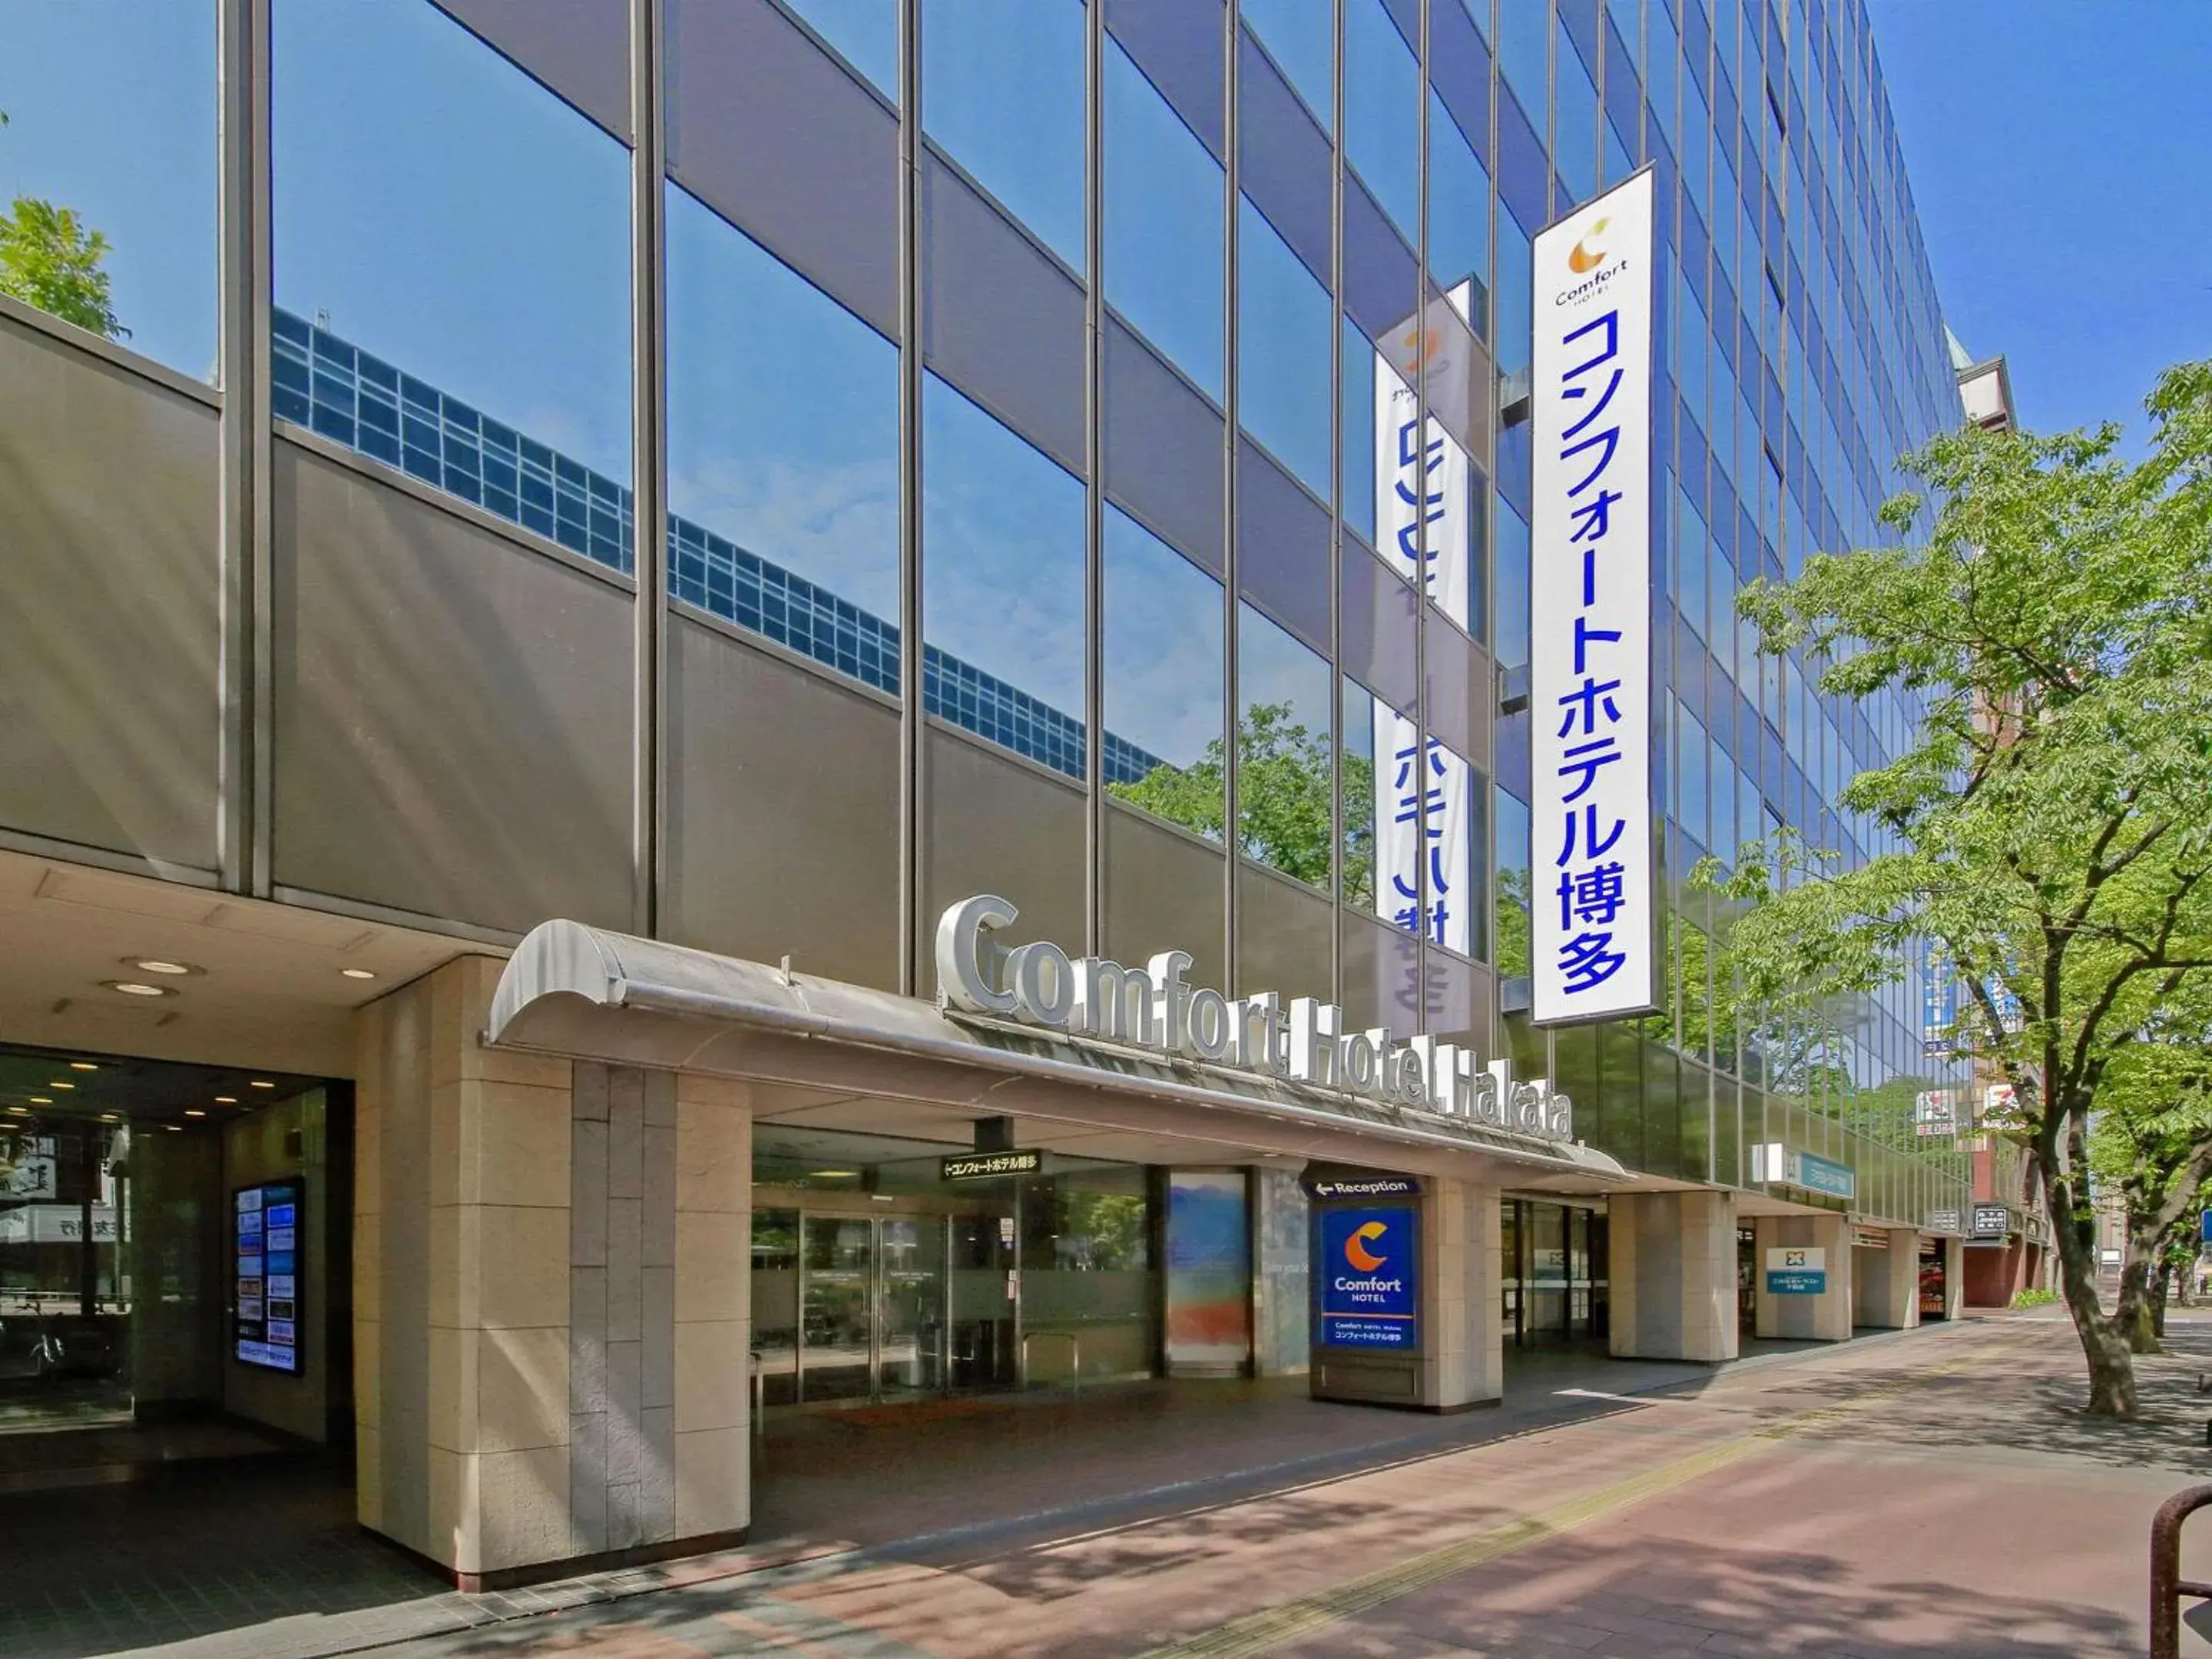 Property building in Comfort Hotel Hakata